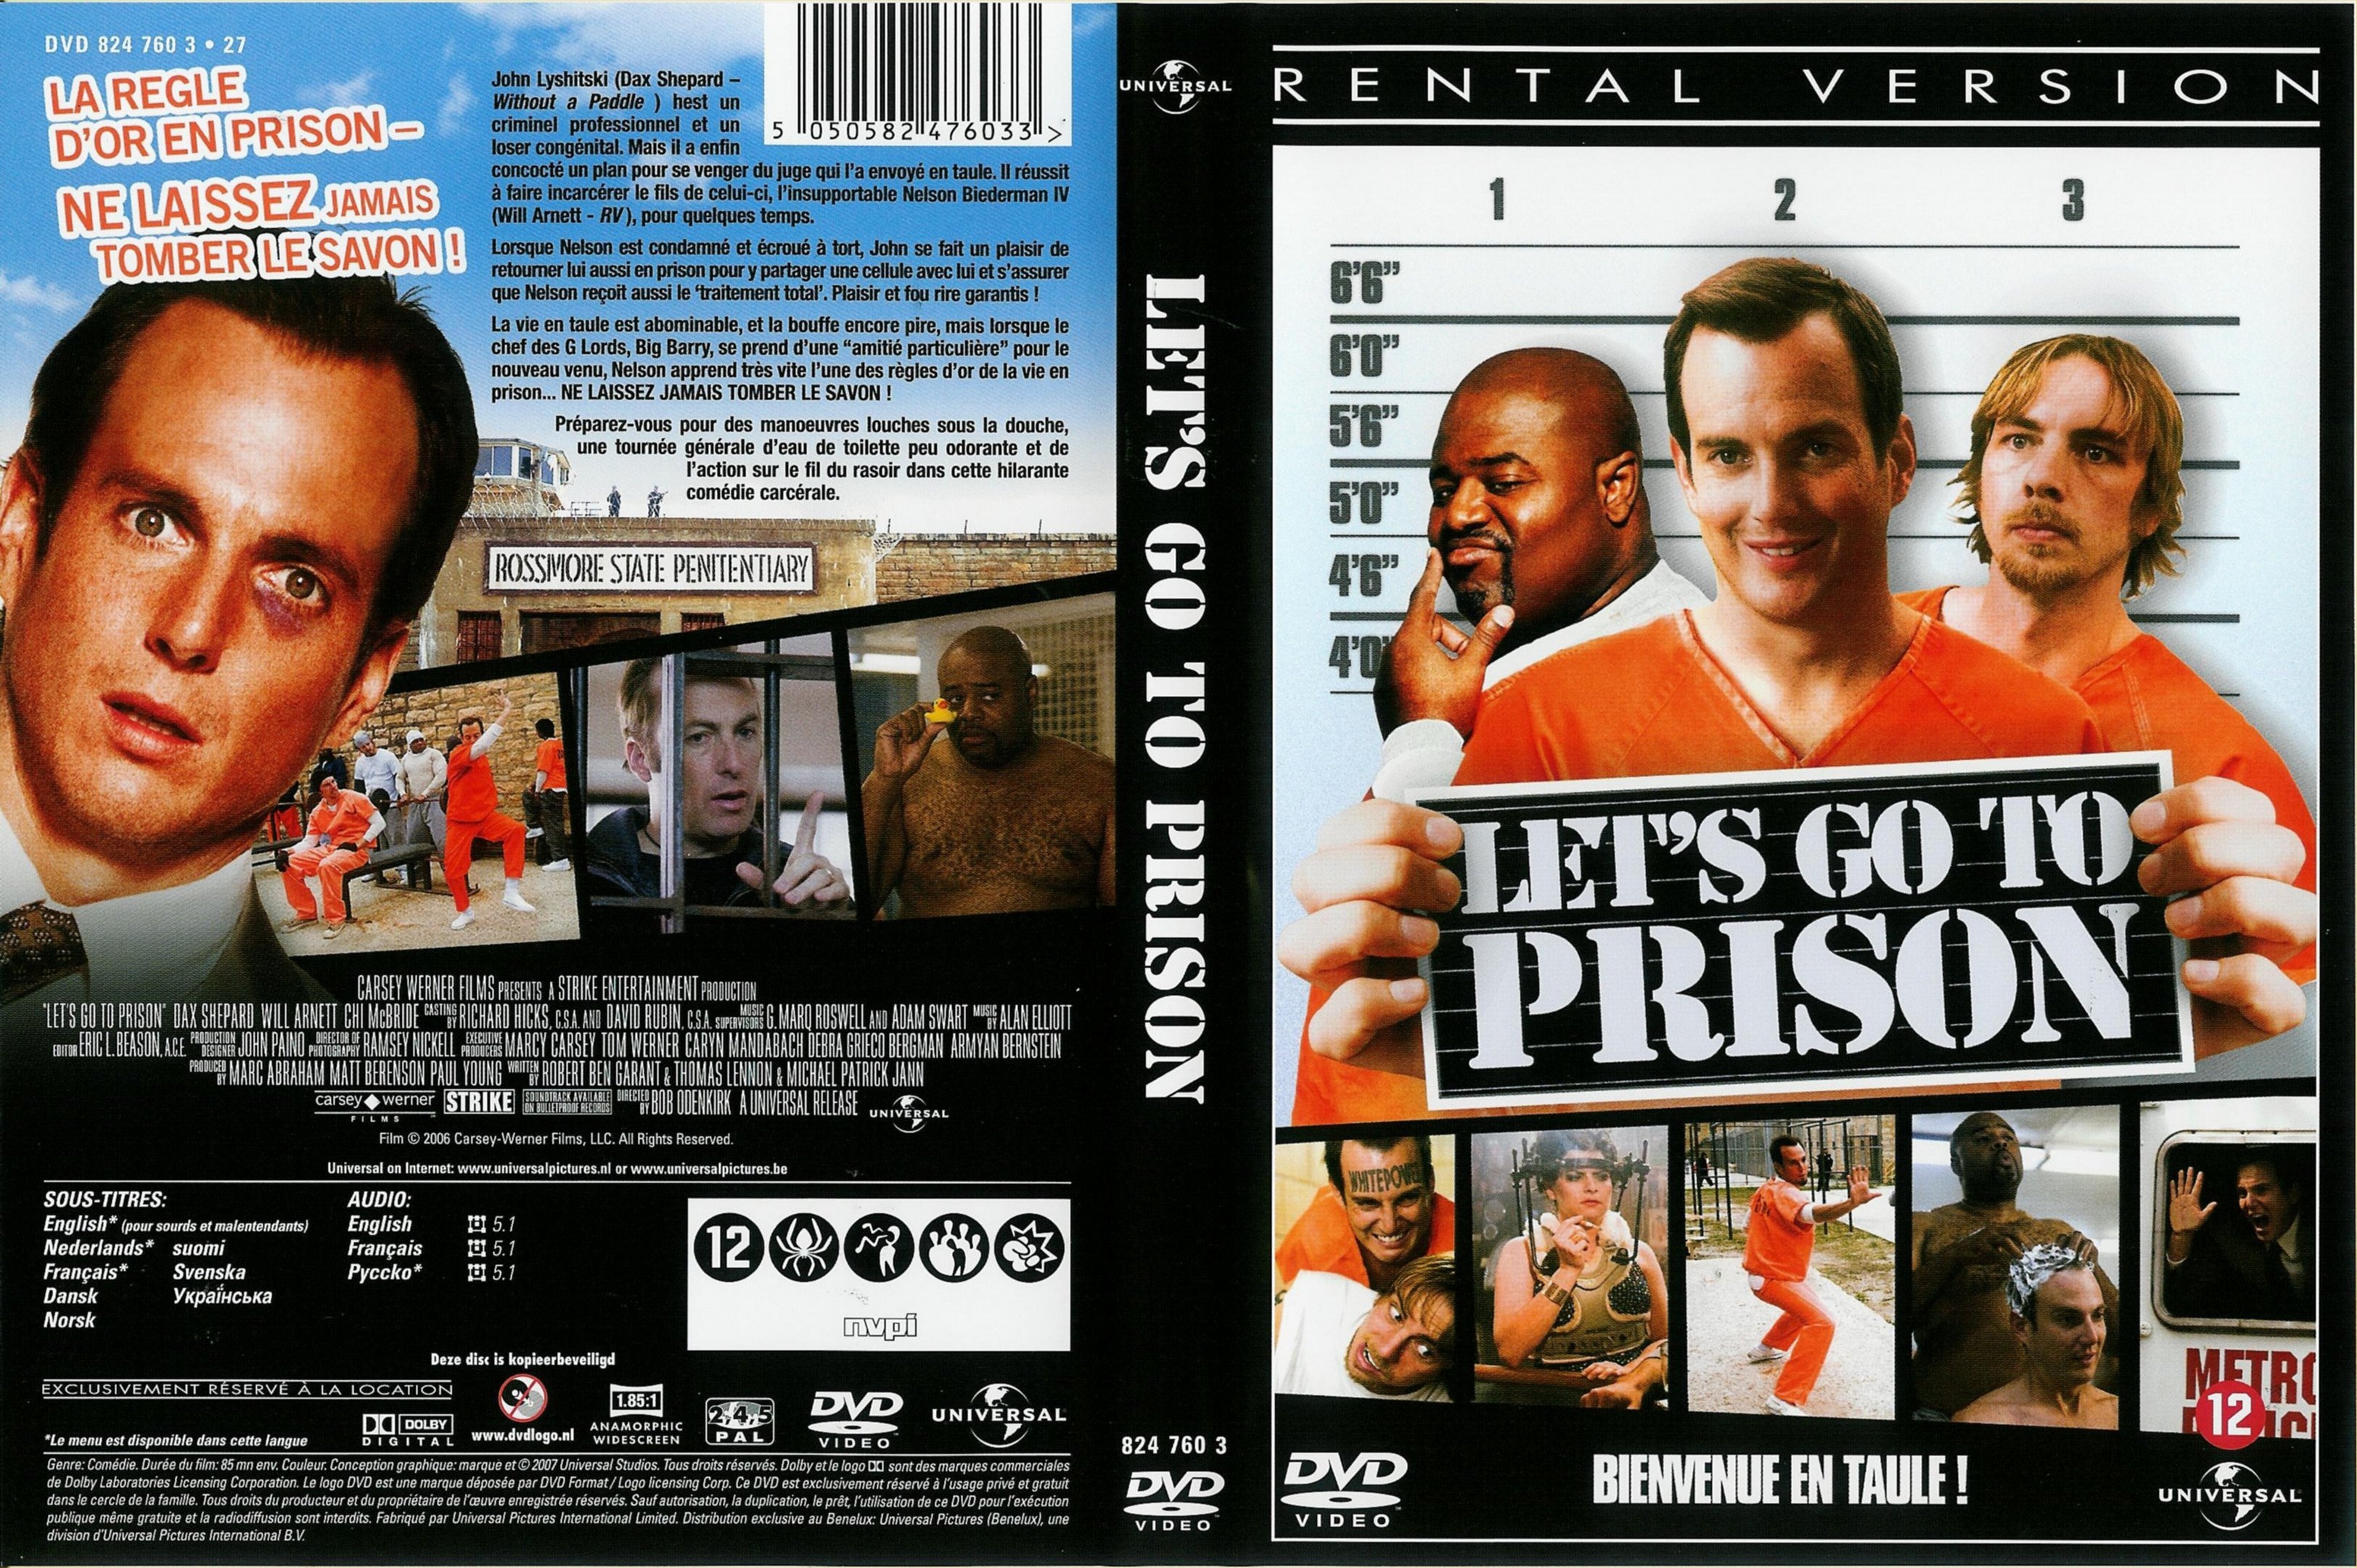 Jaquette Dvd De Lets Go To Prison Cinéma Passion